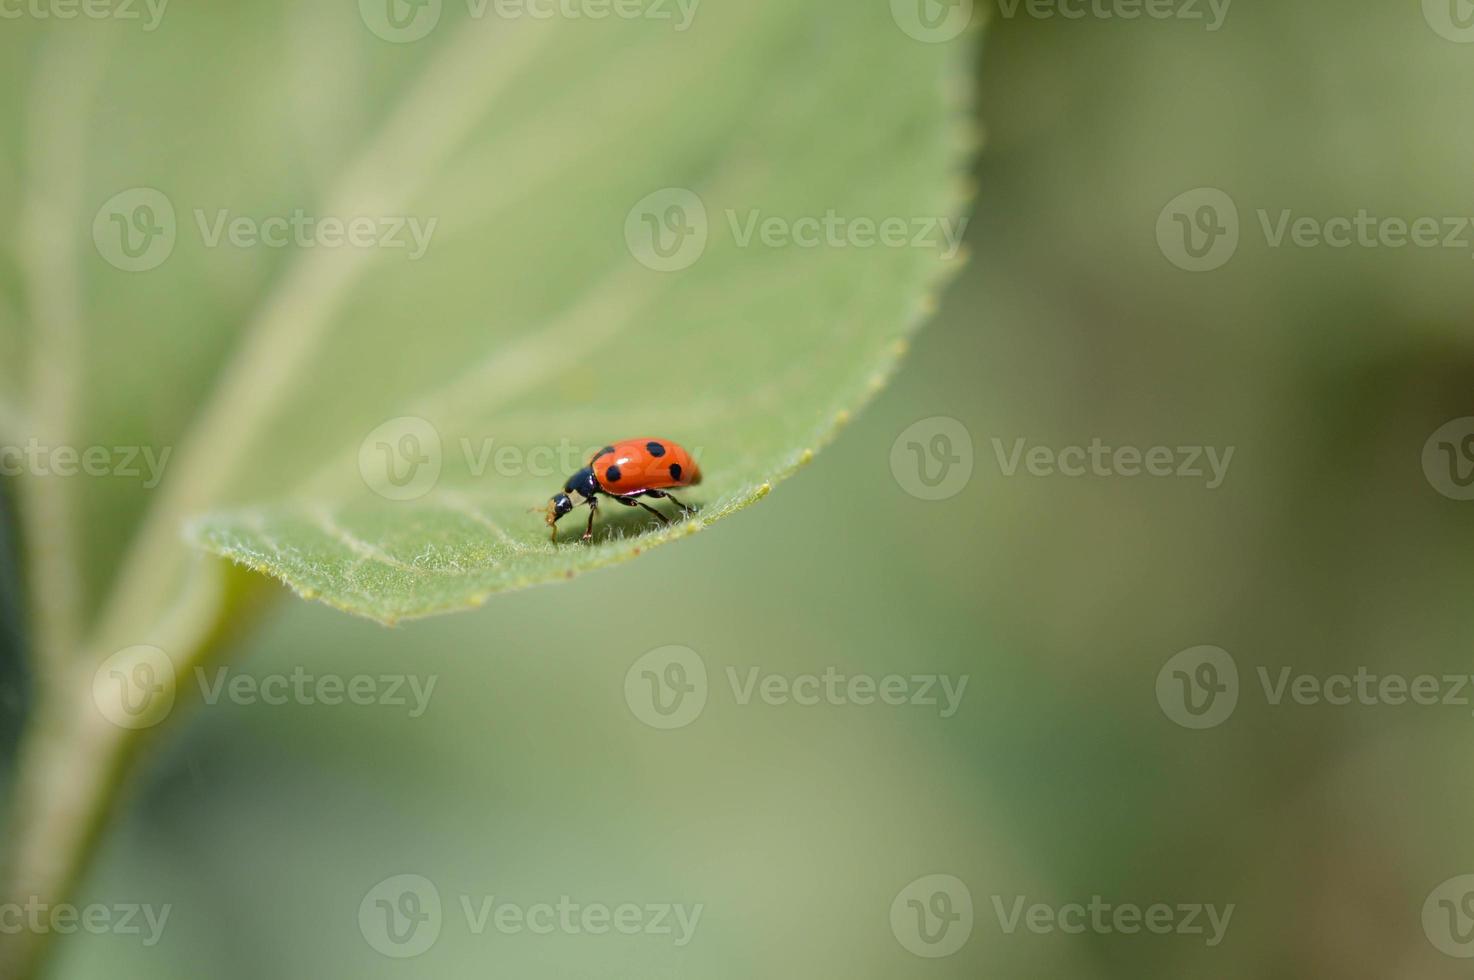 mariquita en una hoja verde macro pequeño insecto rojo con puntos negros. foto